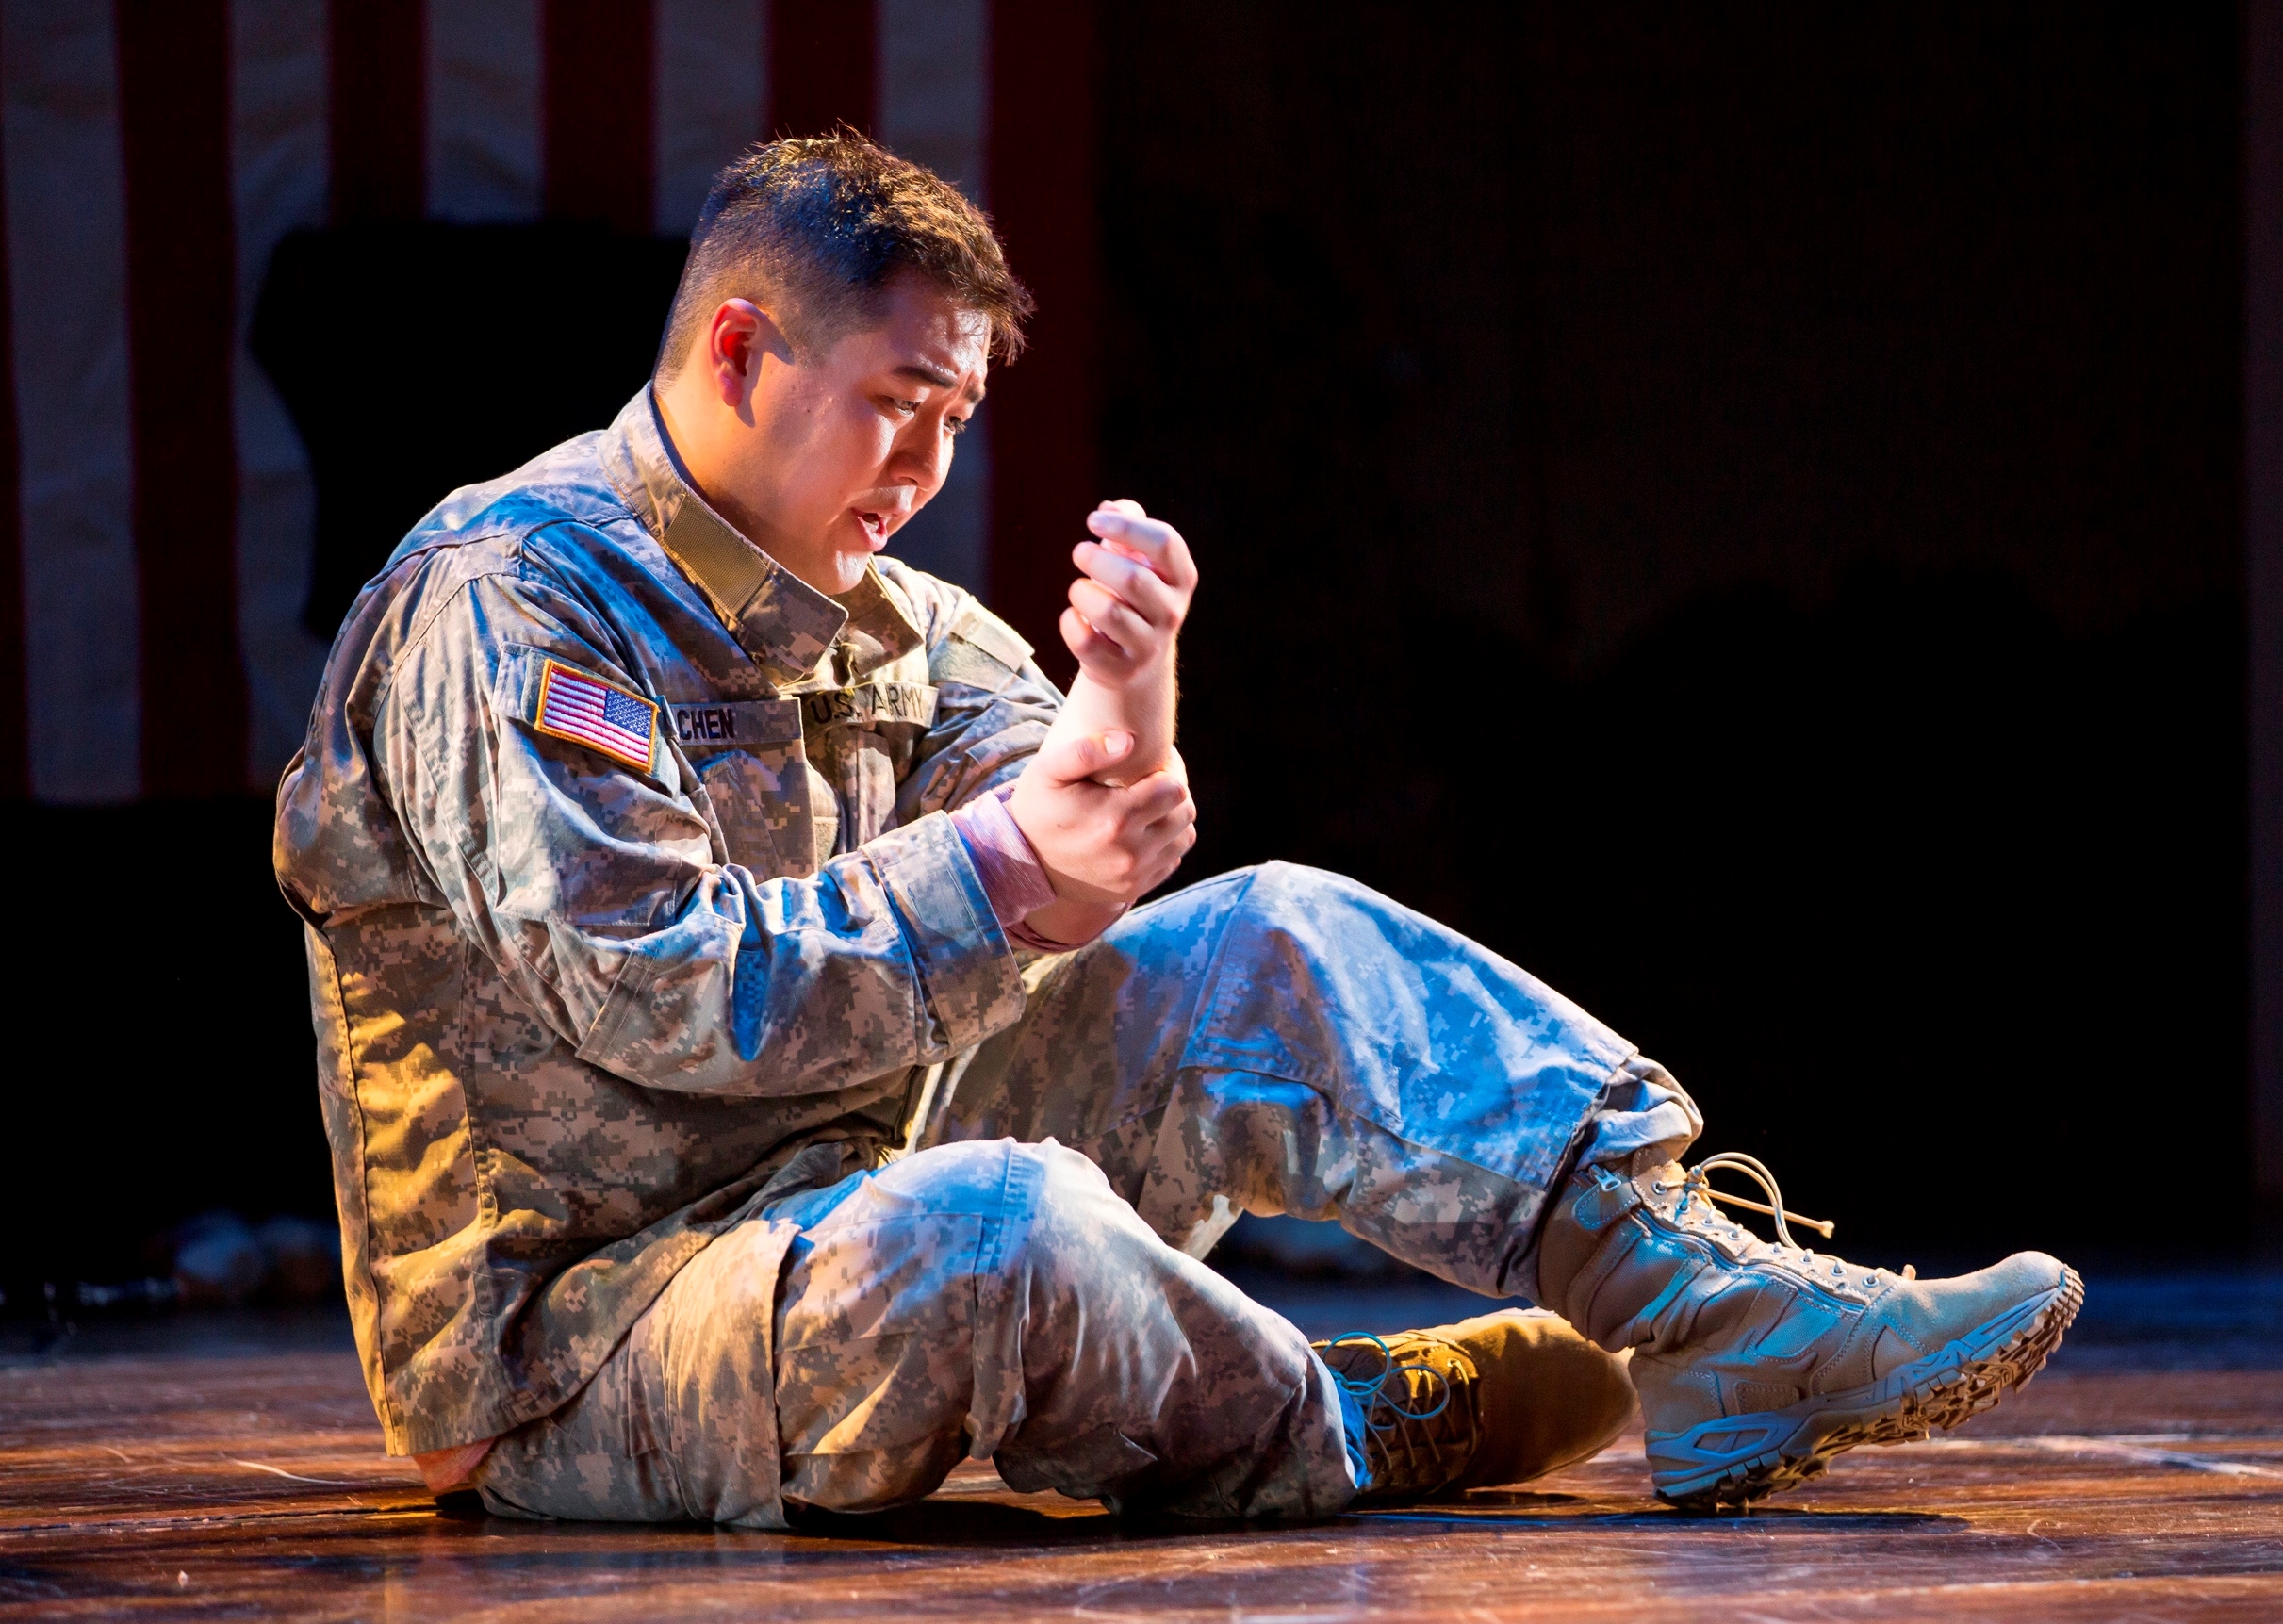 Andrew Stenson饰演陈宇晖。图片来源:Scott Suchman, 华盛顿国家歌剧院, 2015